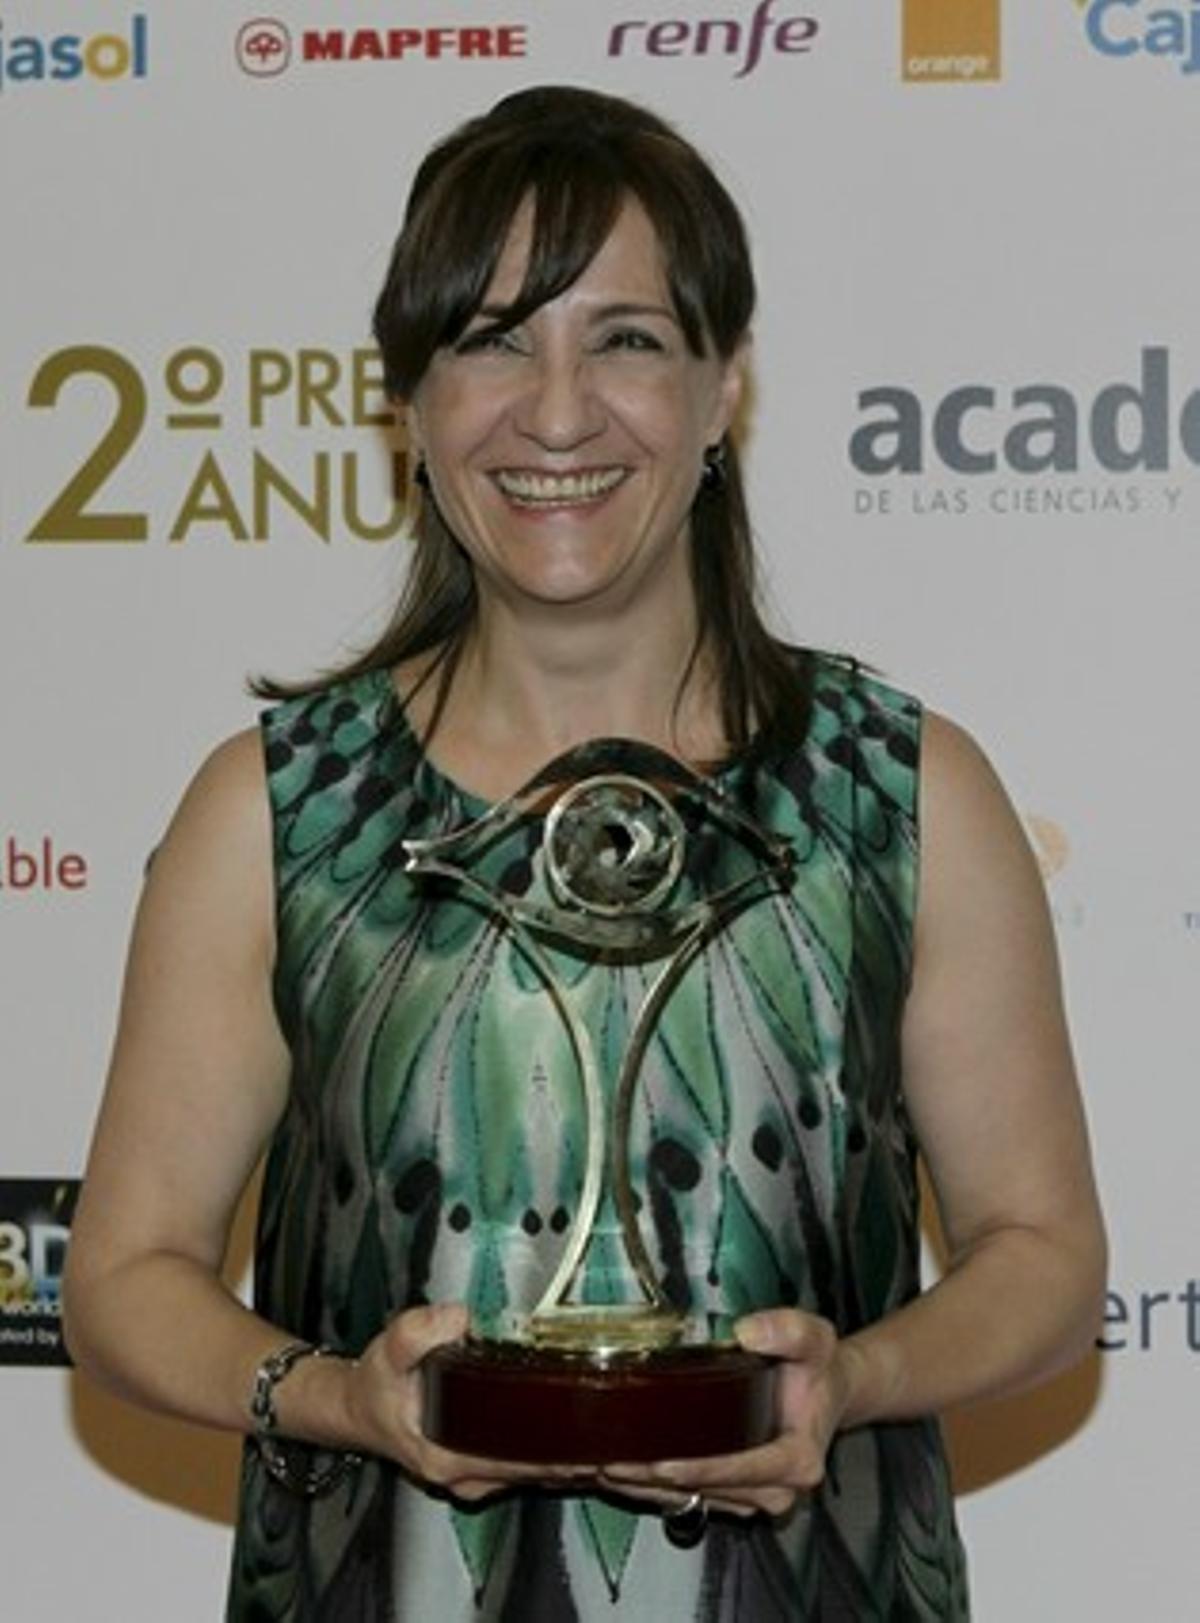 La actriz Blanca Portillo posa con el galardón a la Mejor Actriz por su papel en la serie ’Acusados’, Tele 5.